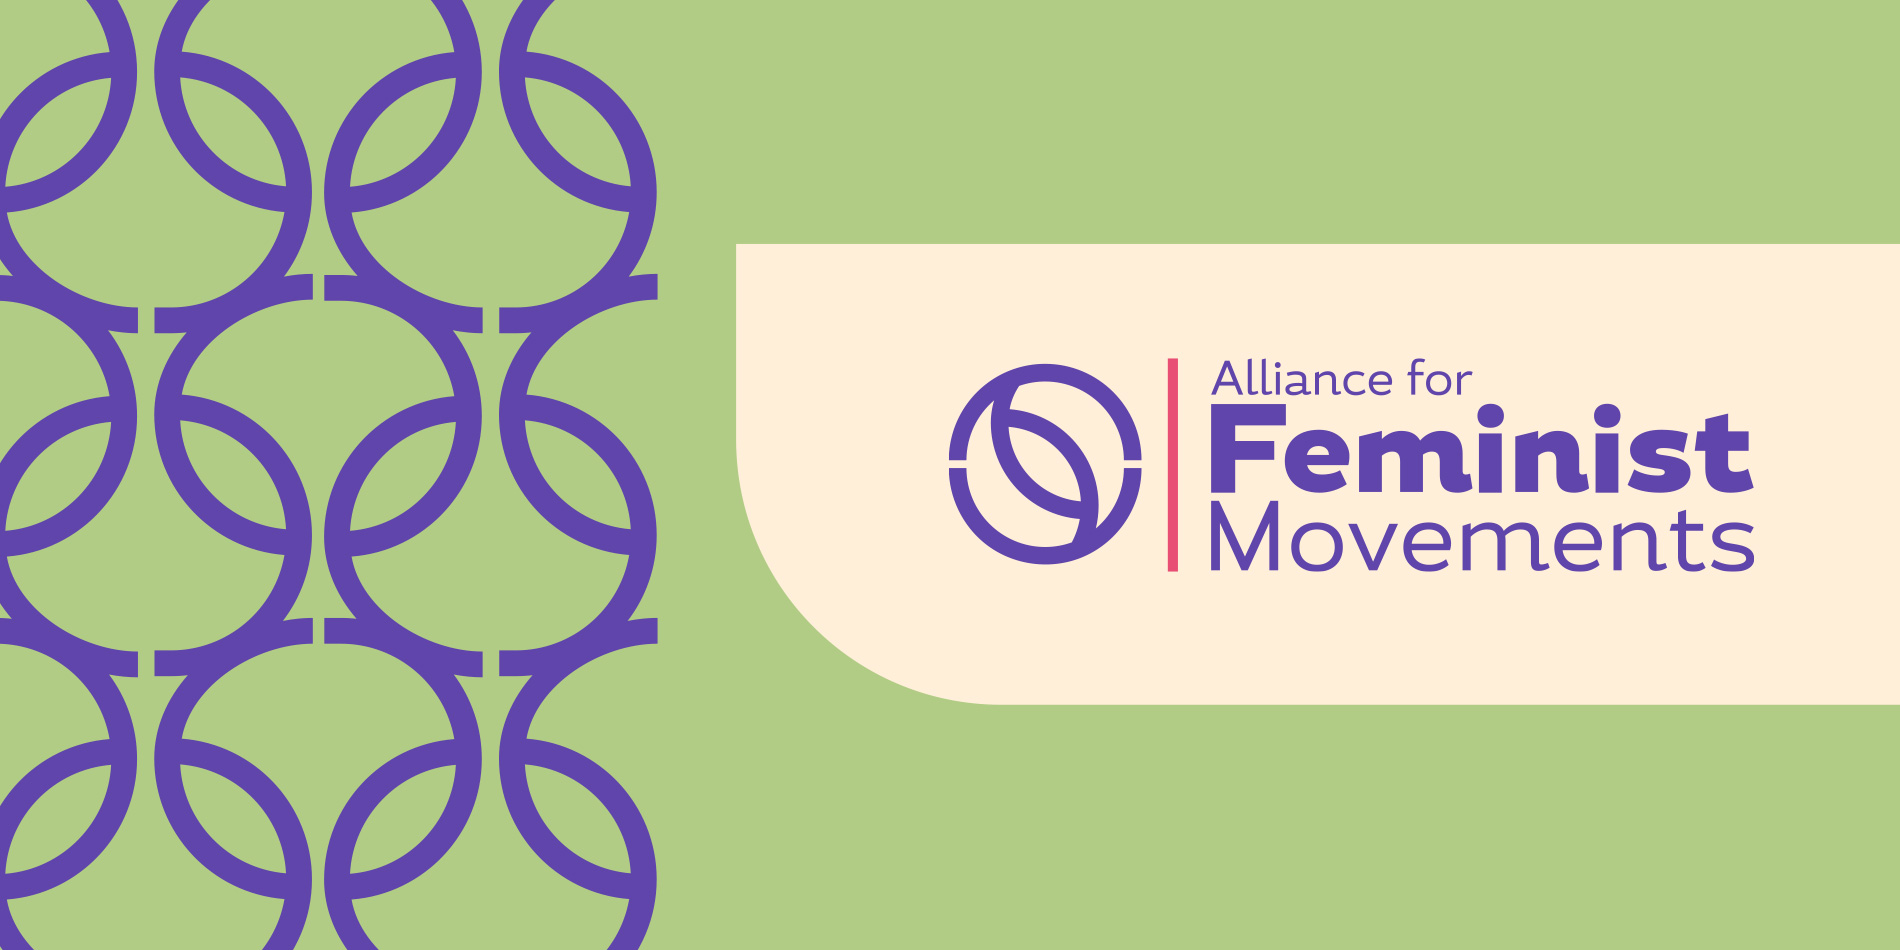 Alliance_for_feminist_movements_banner.jpg